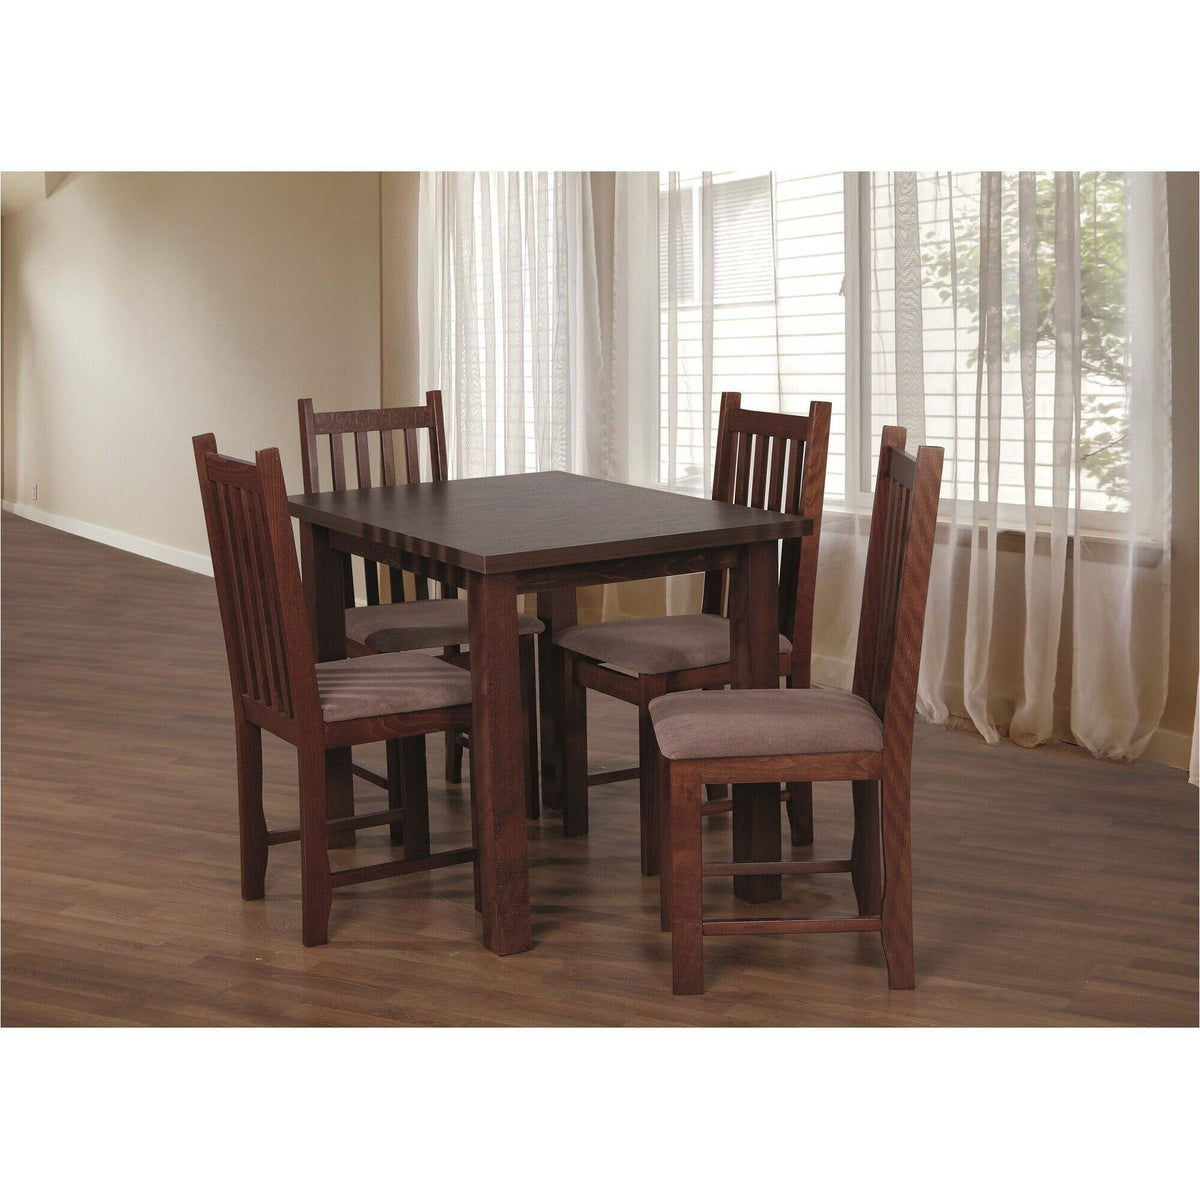 Jídelní set Barol - Stůl 100x70, 4x židle (ořech střední/aston 5) - II. jakost